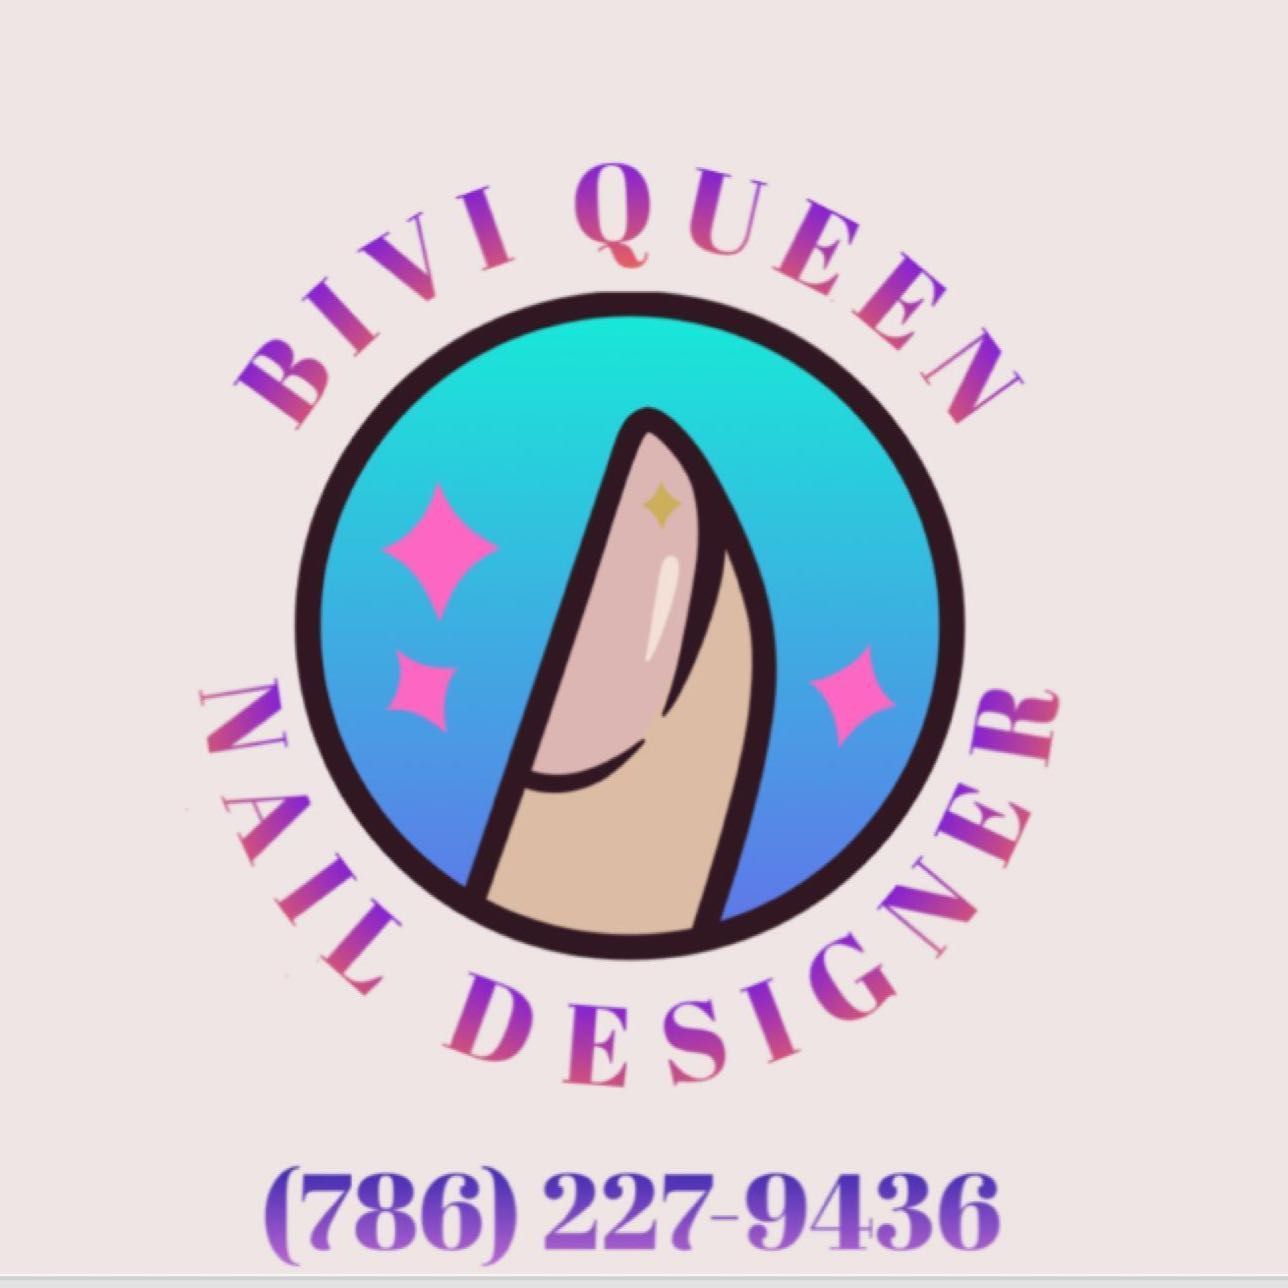 Bivi Nail Designer, 11945 Sw 187 st, Miami, 33177